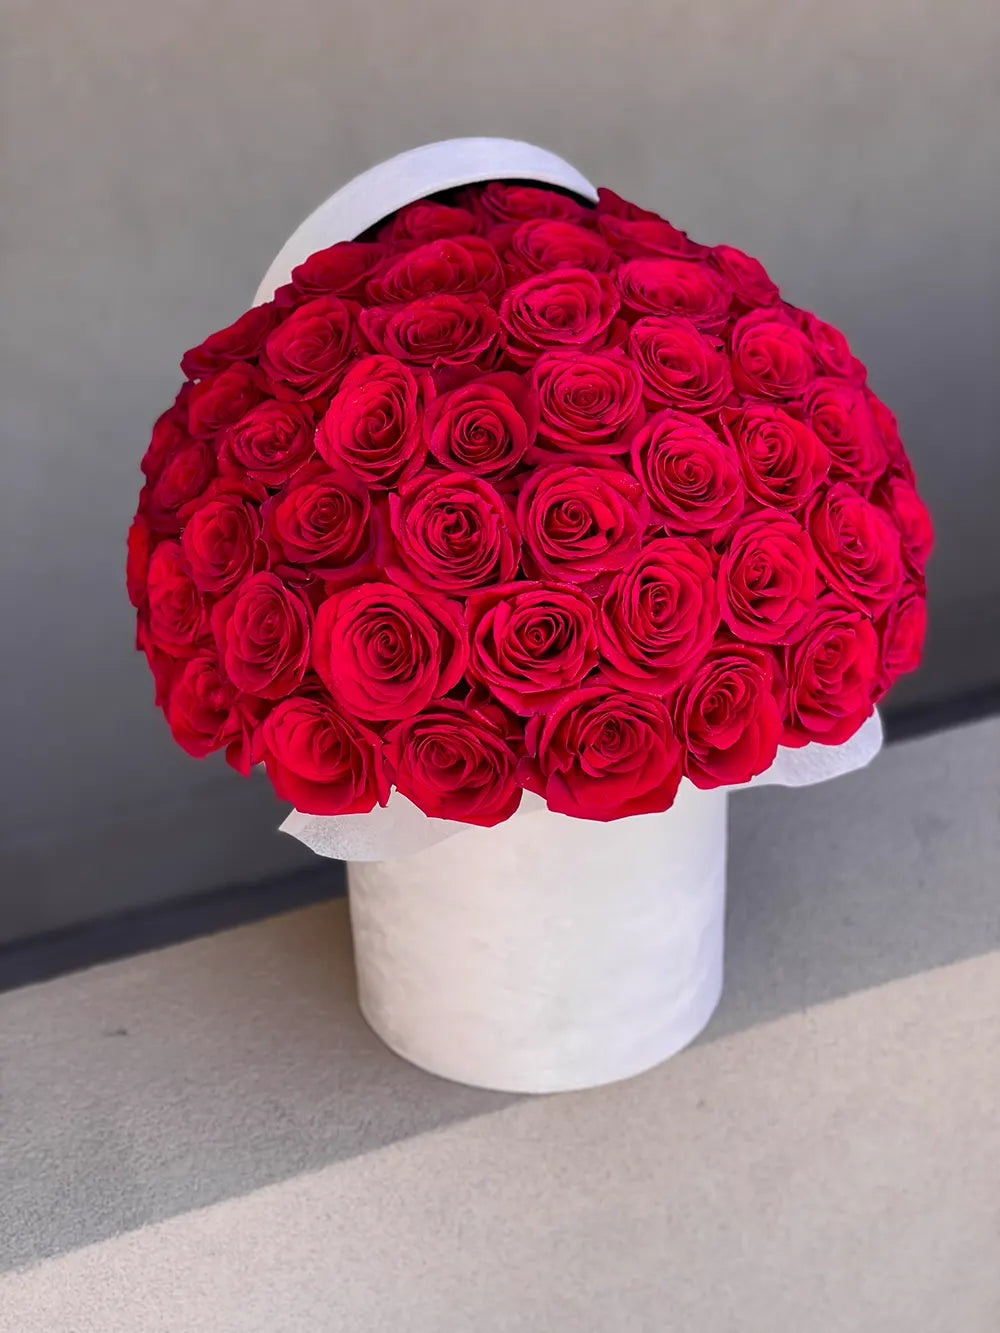 NO. 126. Red Roses in White Velvet Box